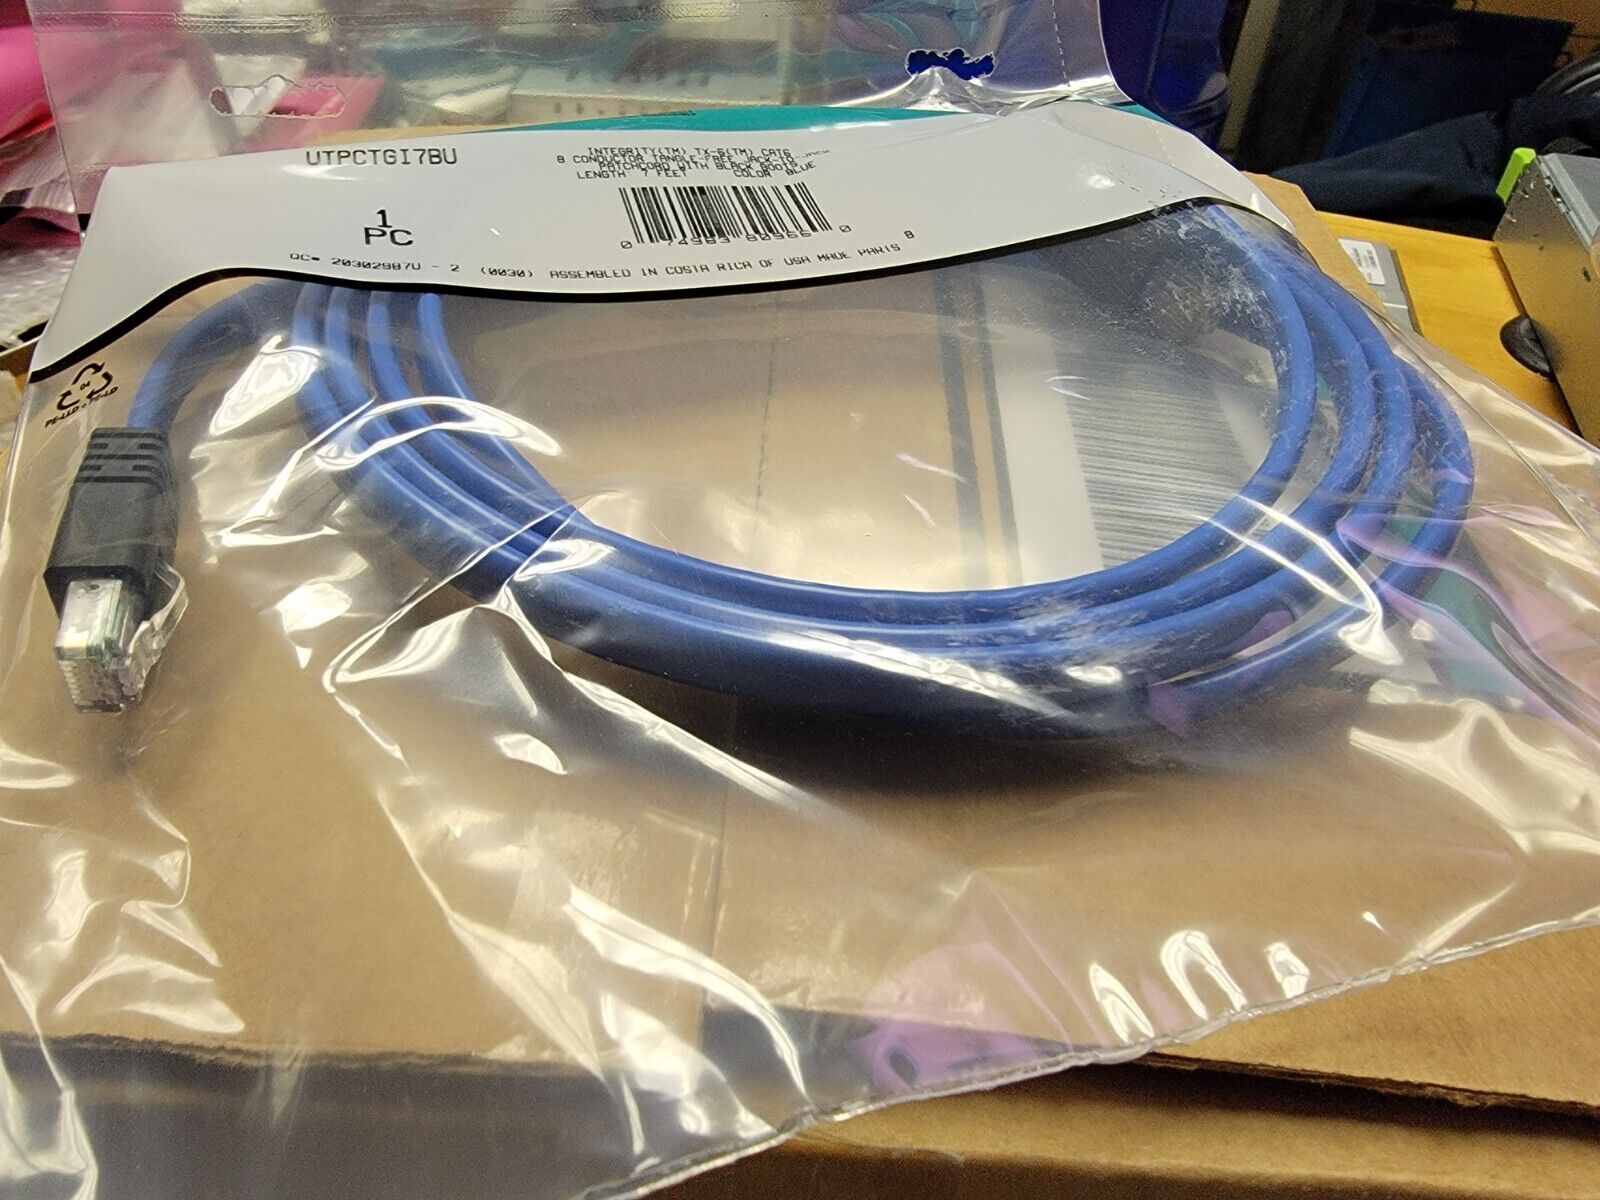 NEW Panduit 10 pk TX6 Cat 6 UTP Copper Patch Cord 10 ft Blue Flat Ethernet Cable